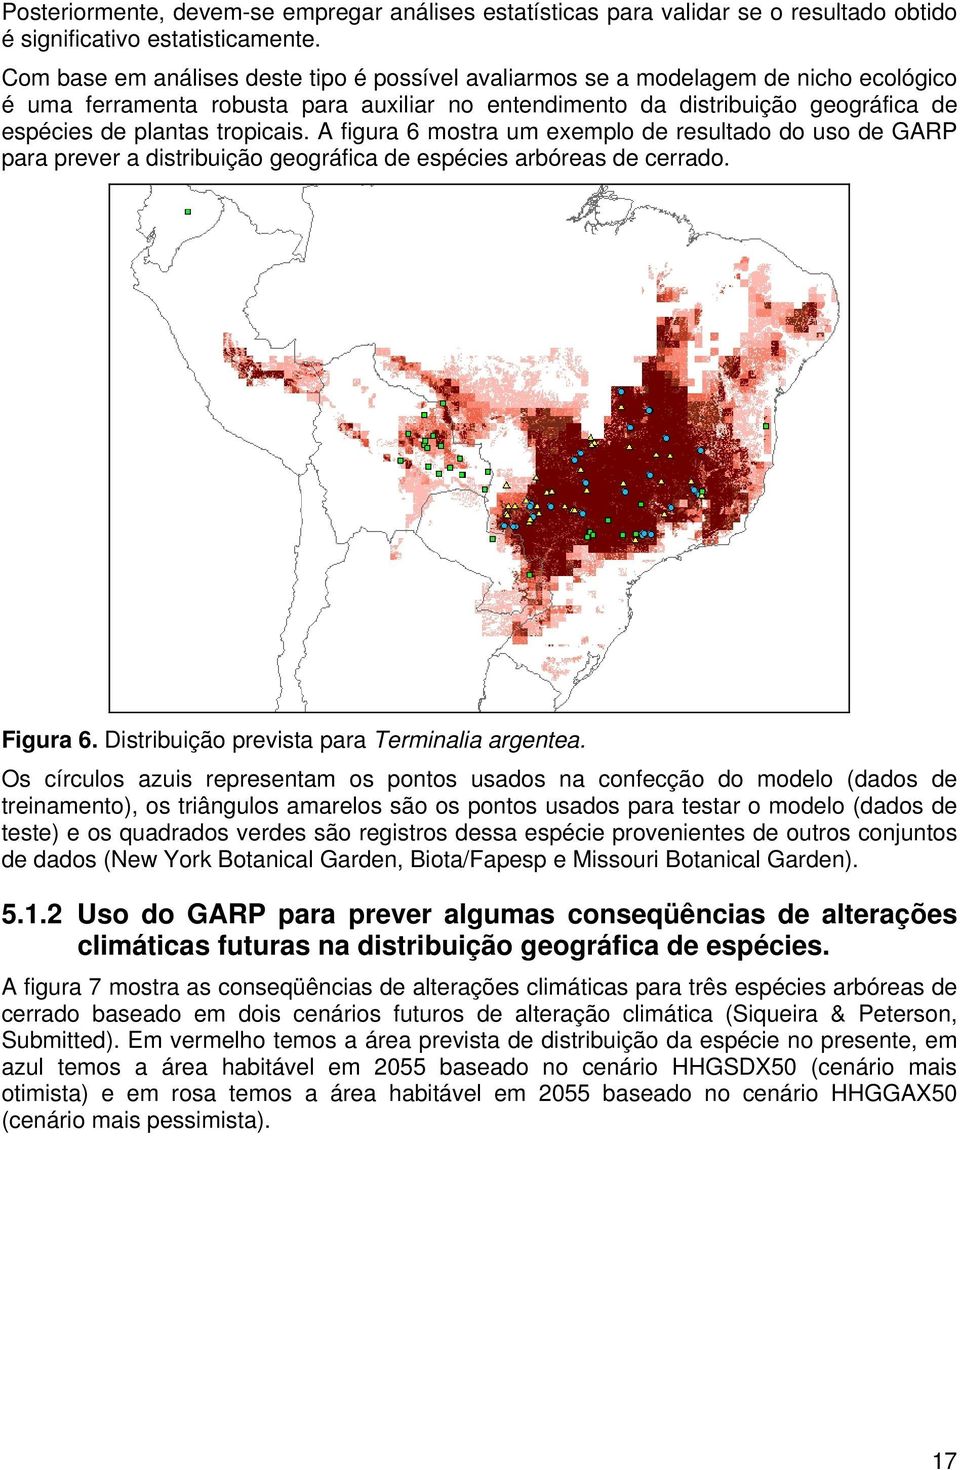 tropicais. A figura 6 mostra um exemplo de resultado do uso de GARP para prever a distribuição geográfica de espécies arbóreas de cerrado. Figura 6. Distribuição prevista para Terminalia argentea.